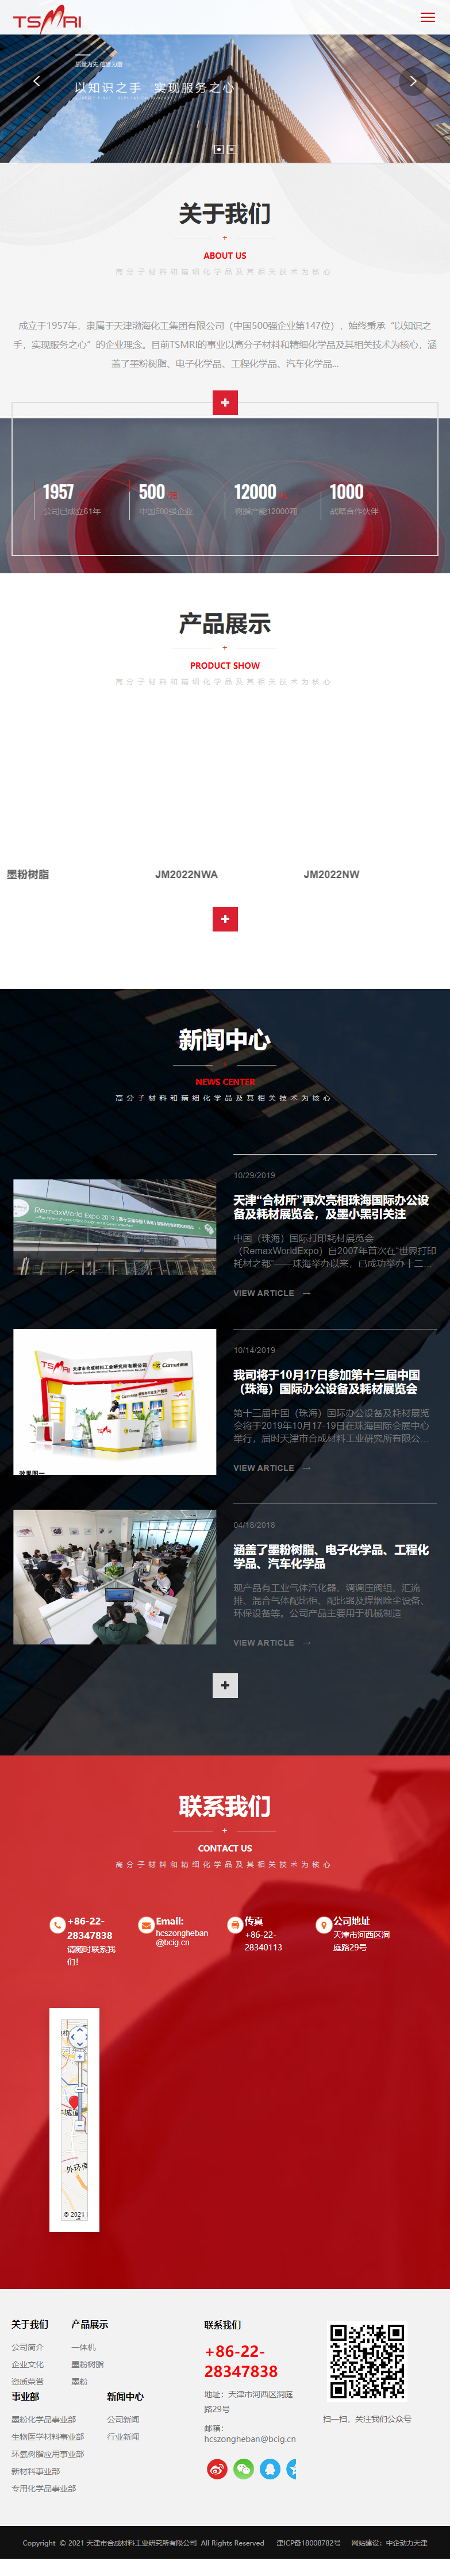 天津市合成材料工业研究所有限公司网站案例